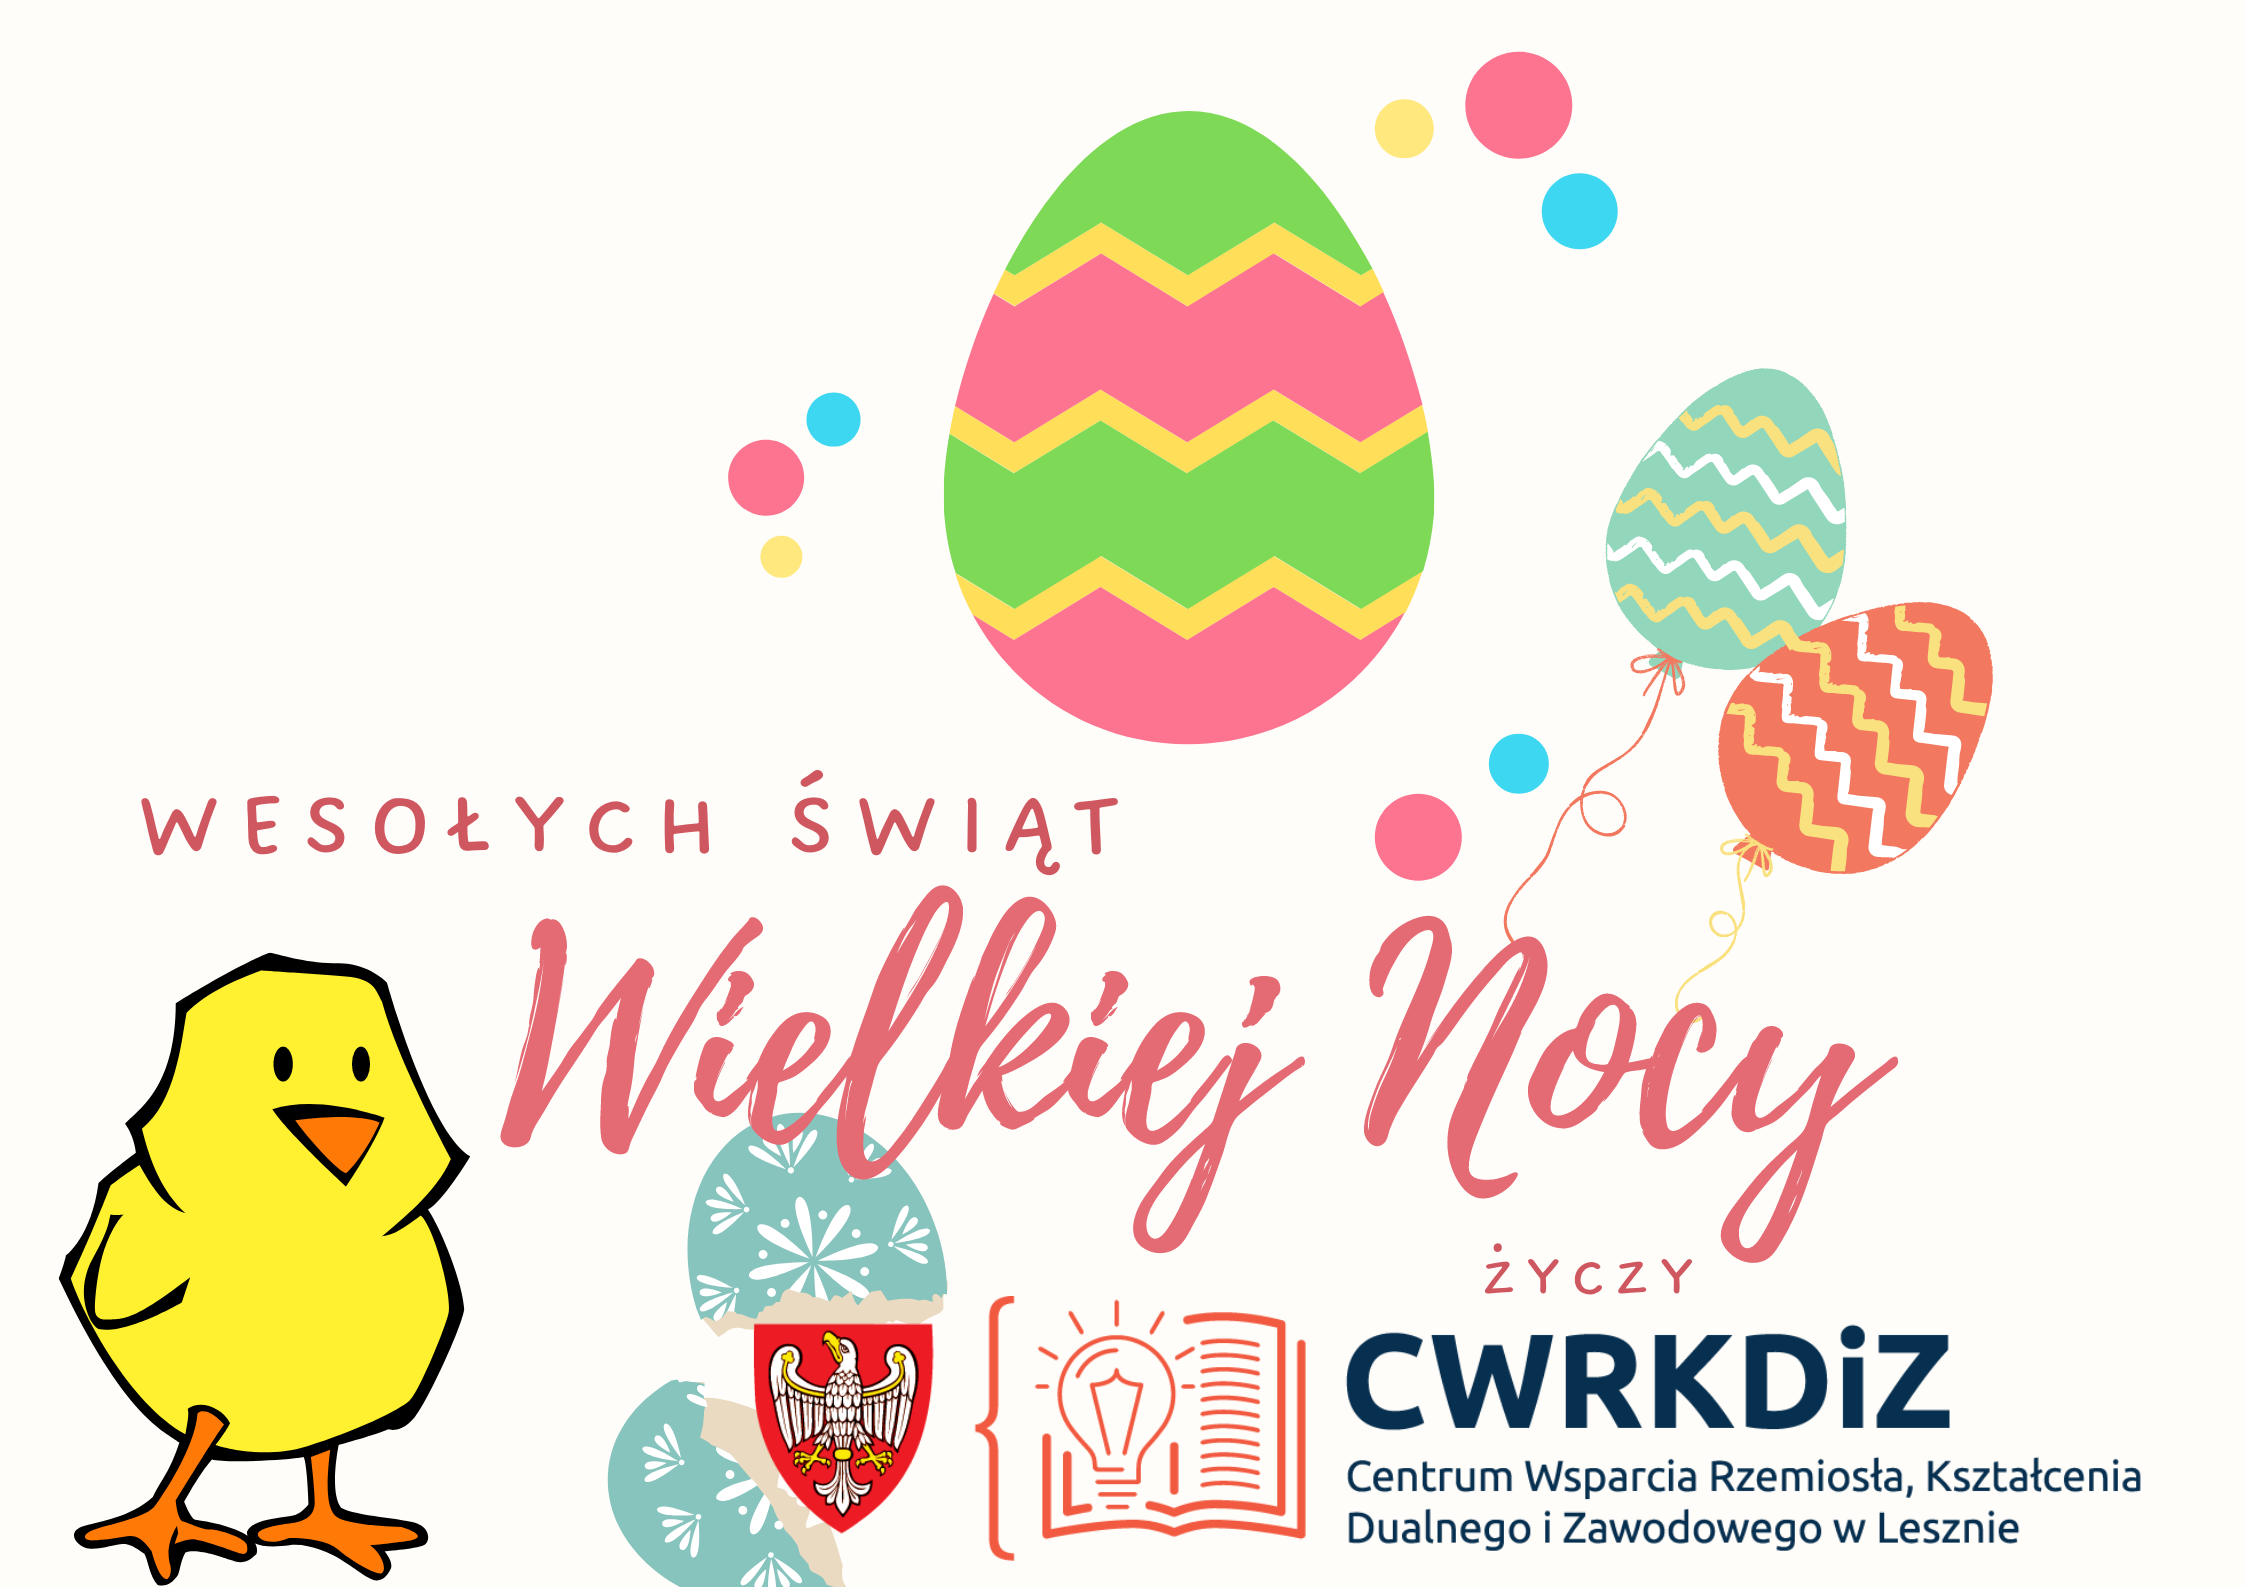 Życzenia Wielkanocne. Grafika przedstawia kolorowe pisanki, kurczaczka i wykluwające się z pisanki logo CWRKDiZ w Lesznie.